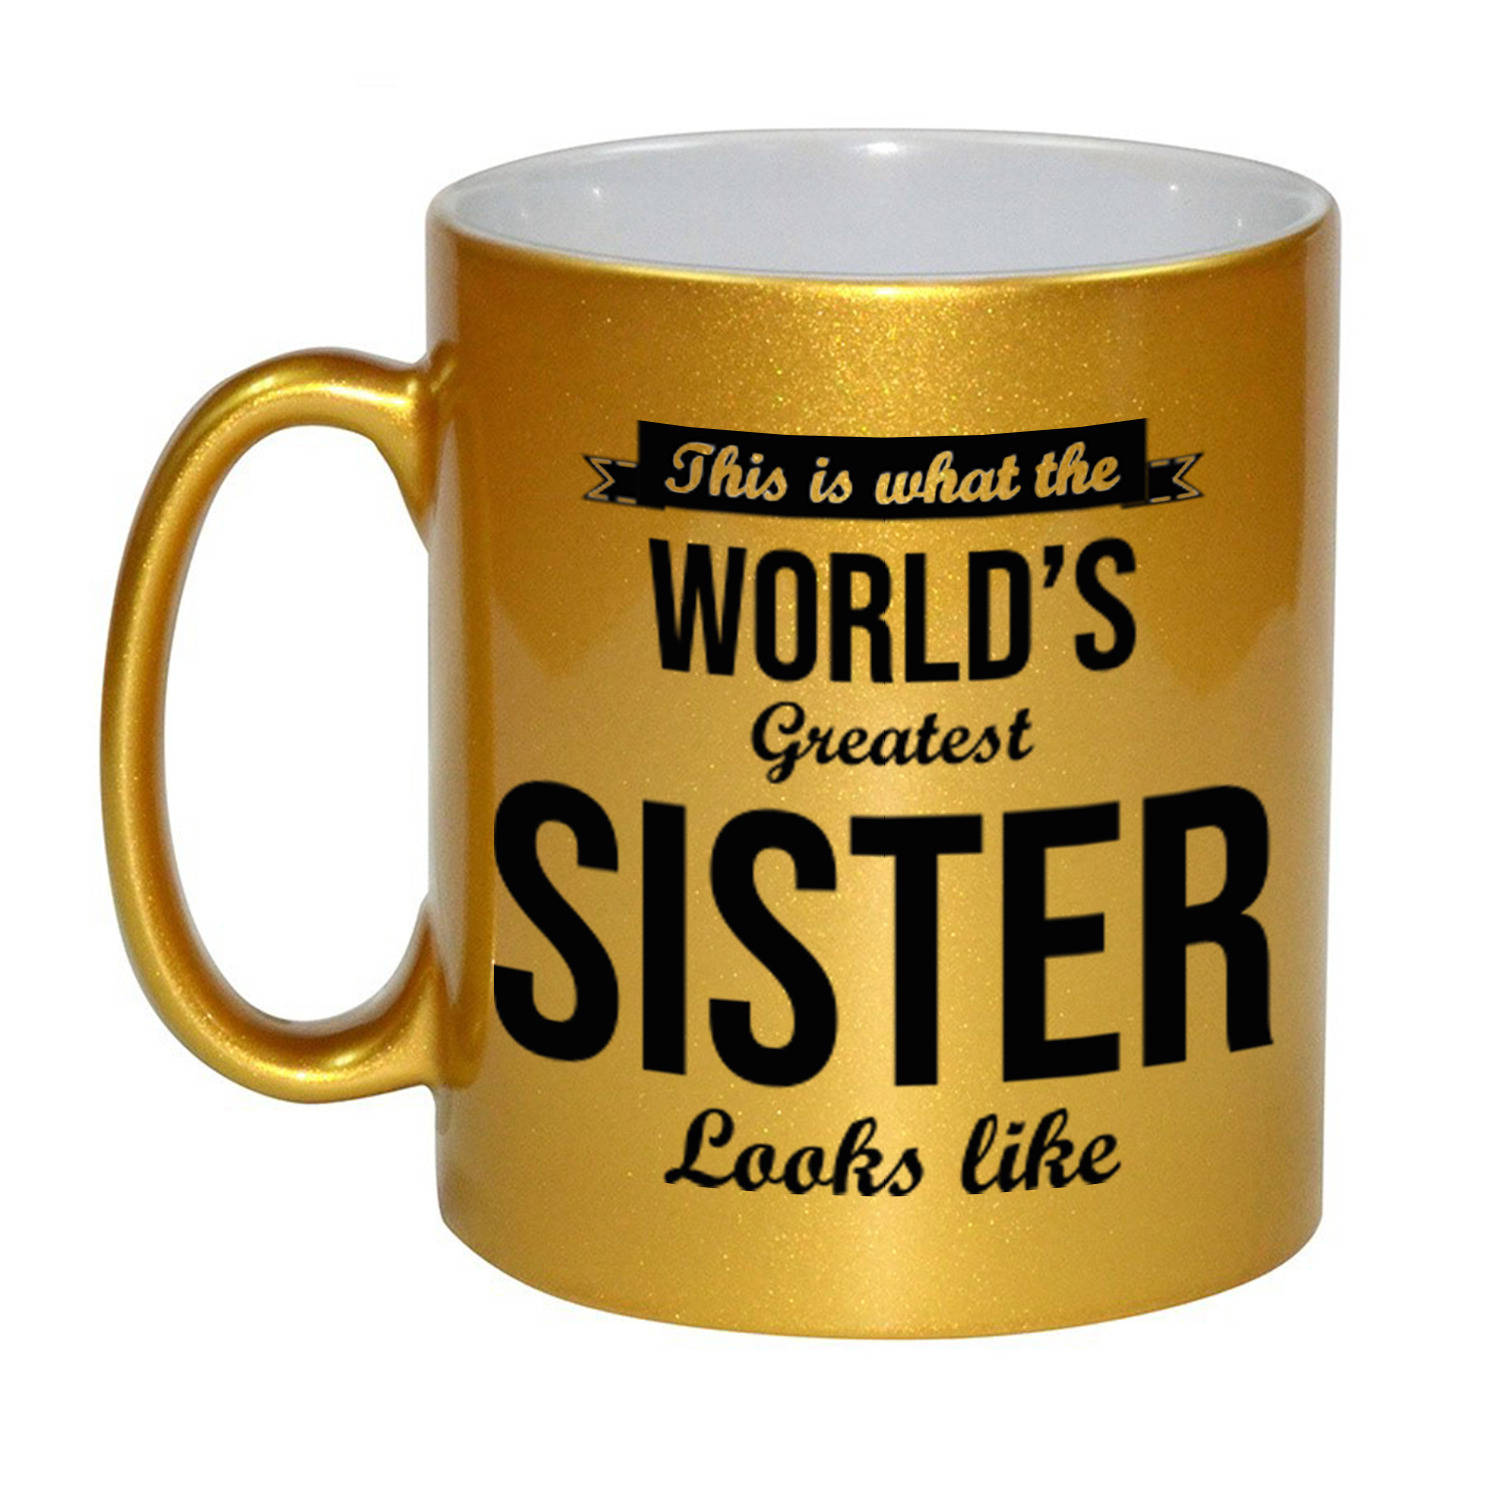 Worlds Greatest Sister cadeau mok / beker goudglanzend 330 ml - feest mokken